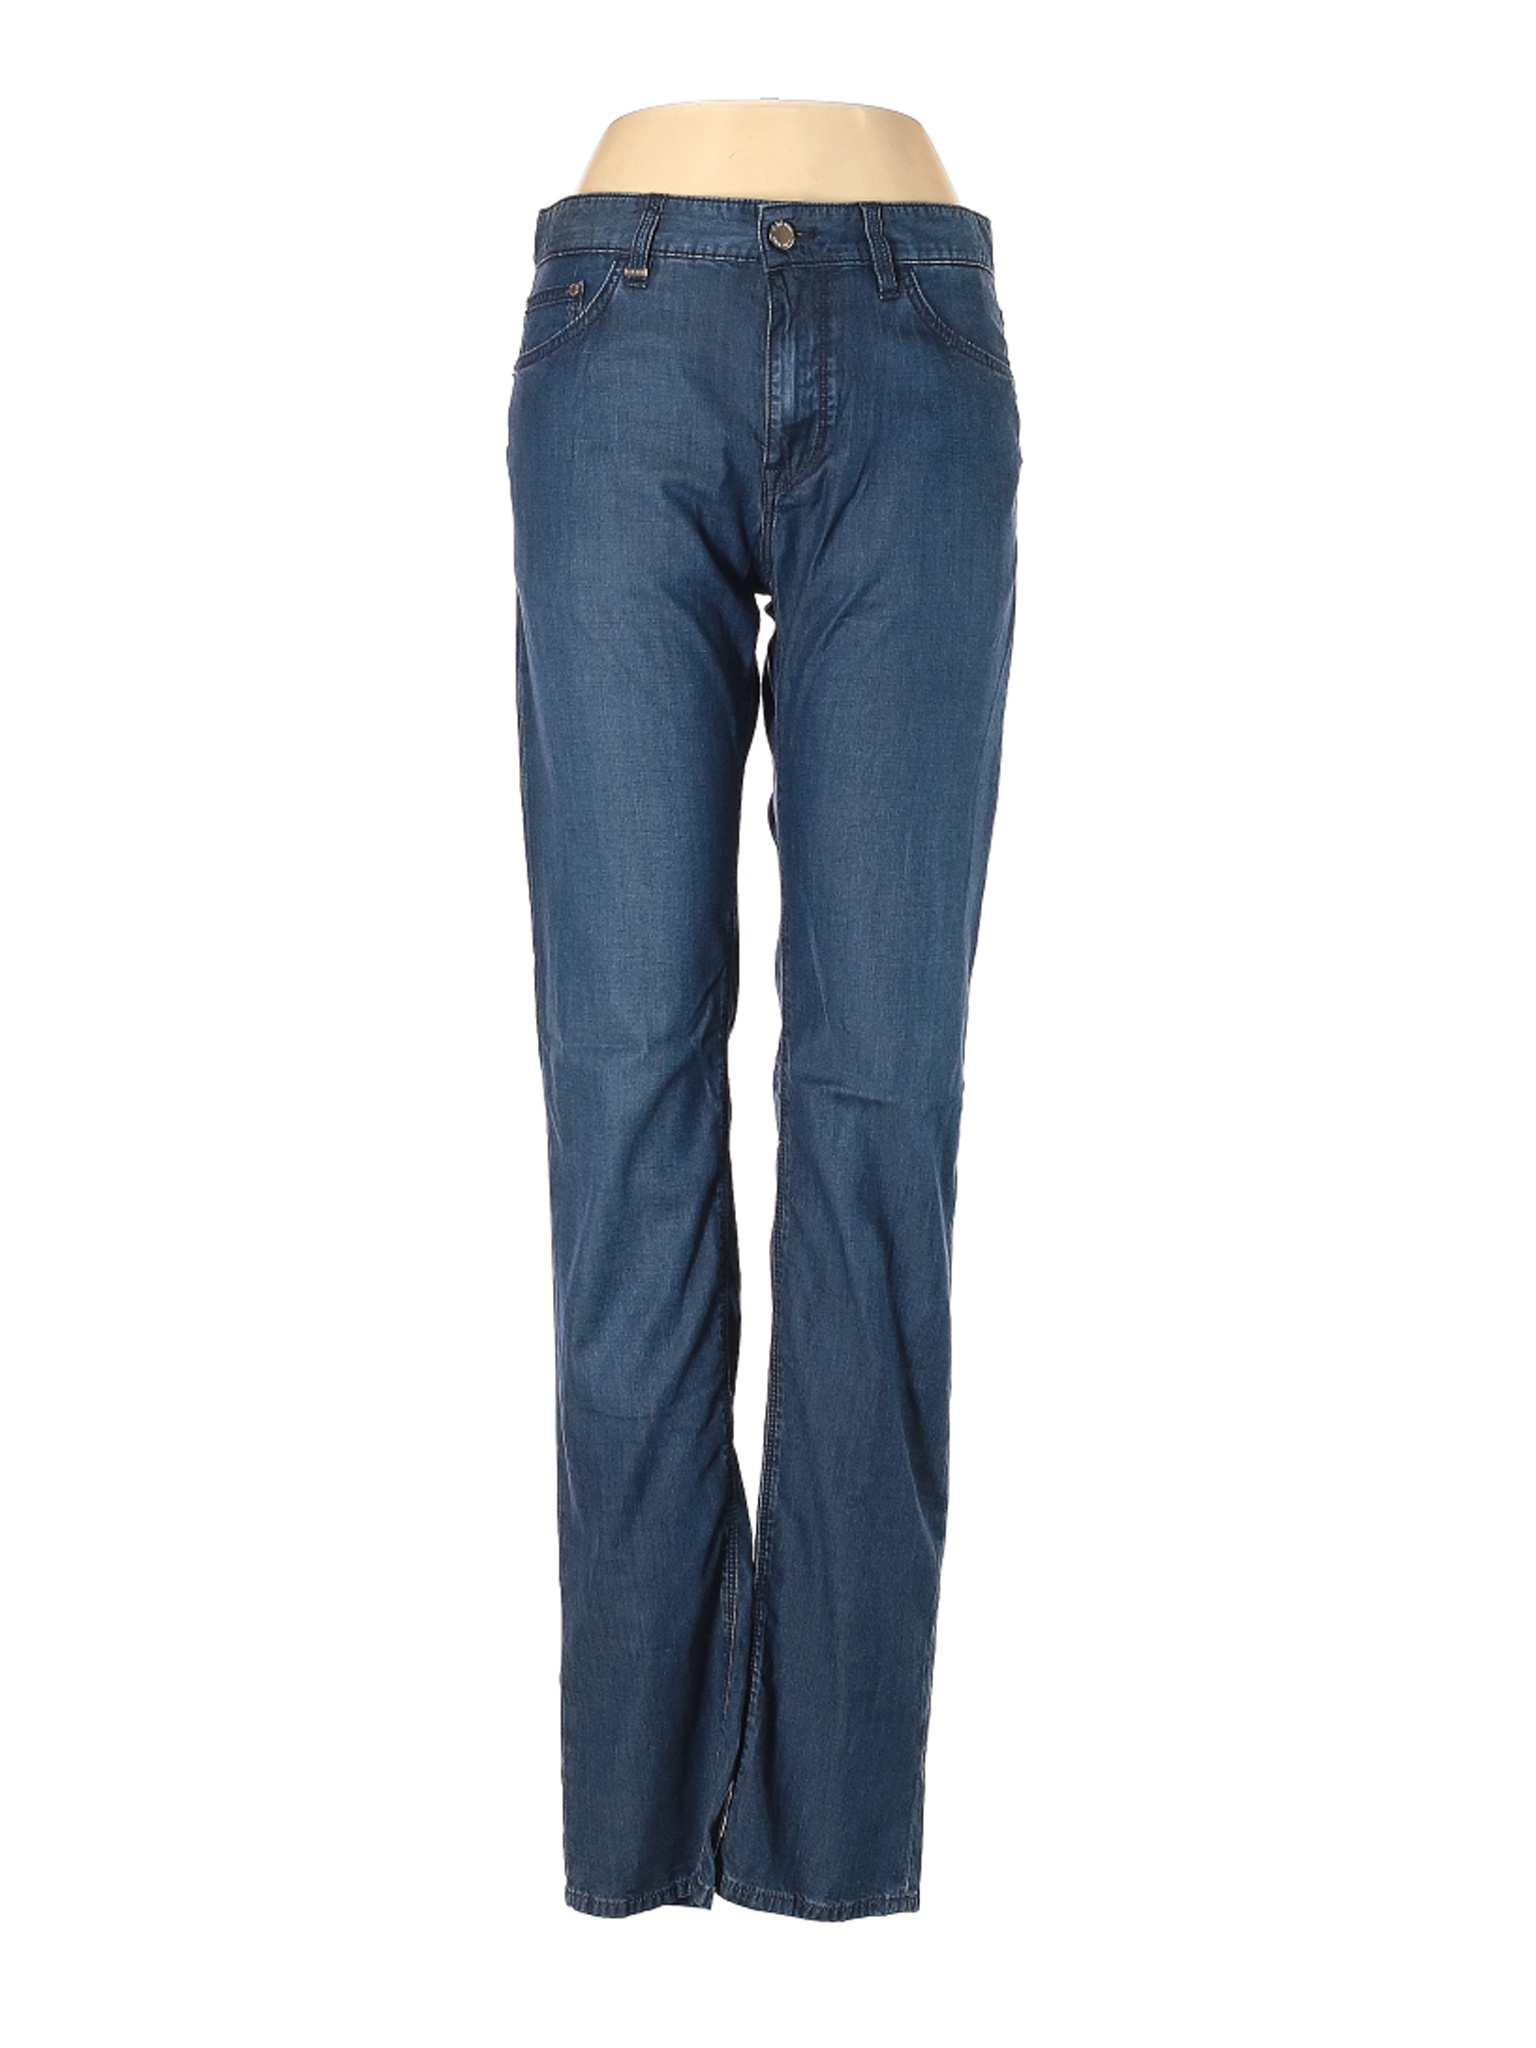 NWT BOSS by HUGO BOSS Women Blue Jeans 32W | eBay